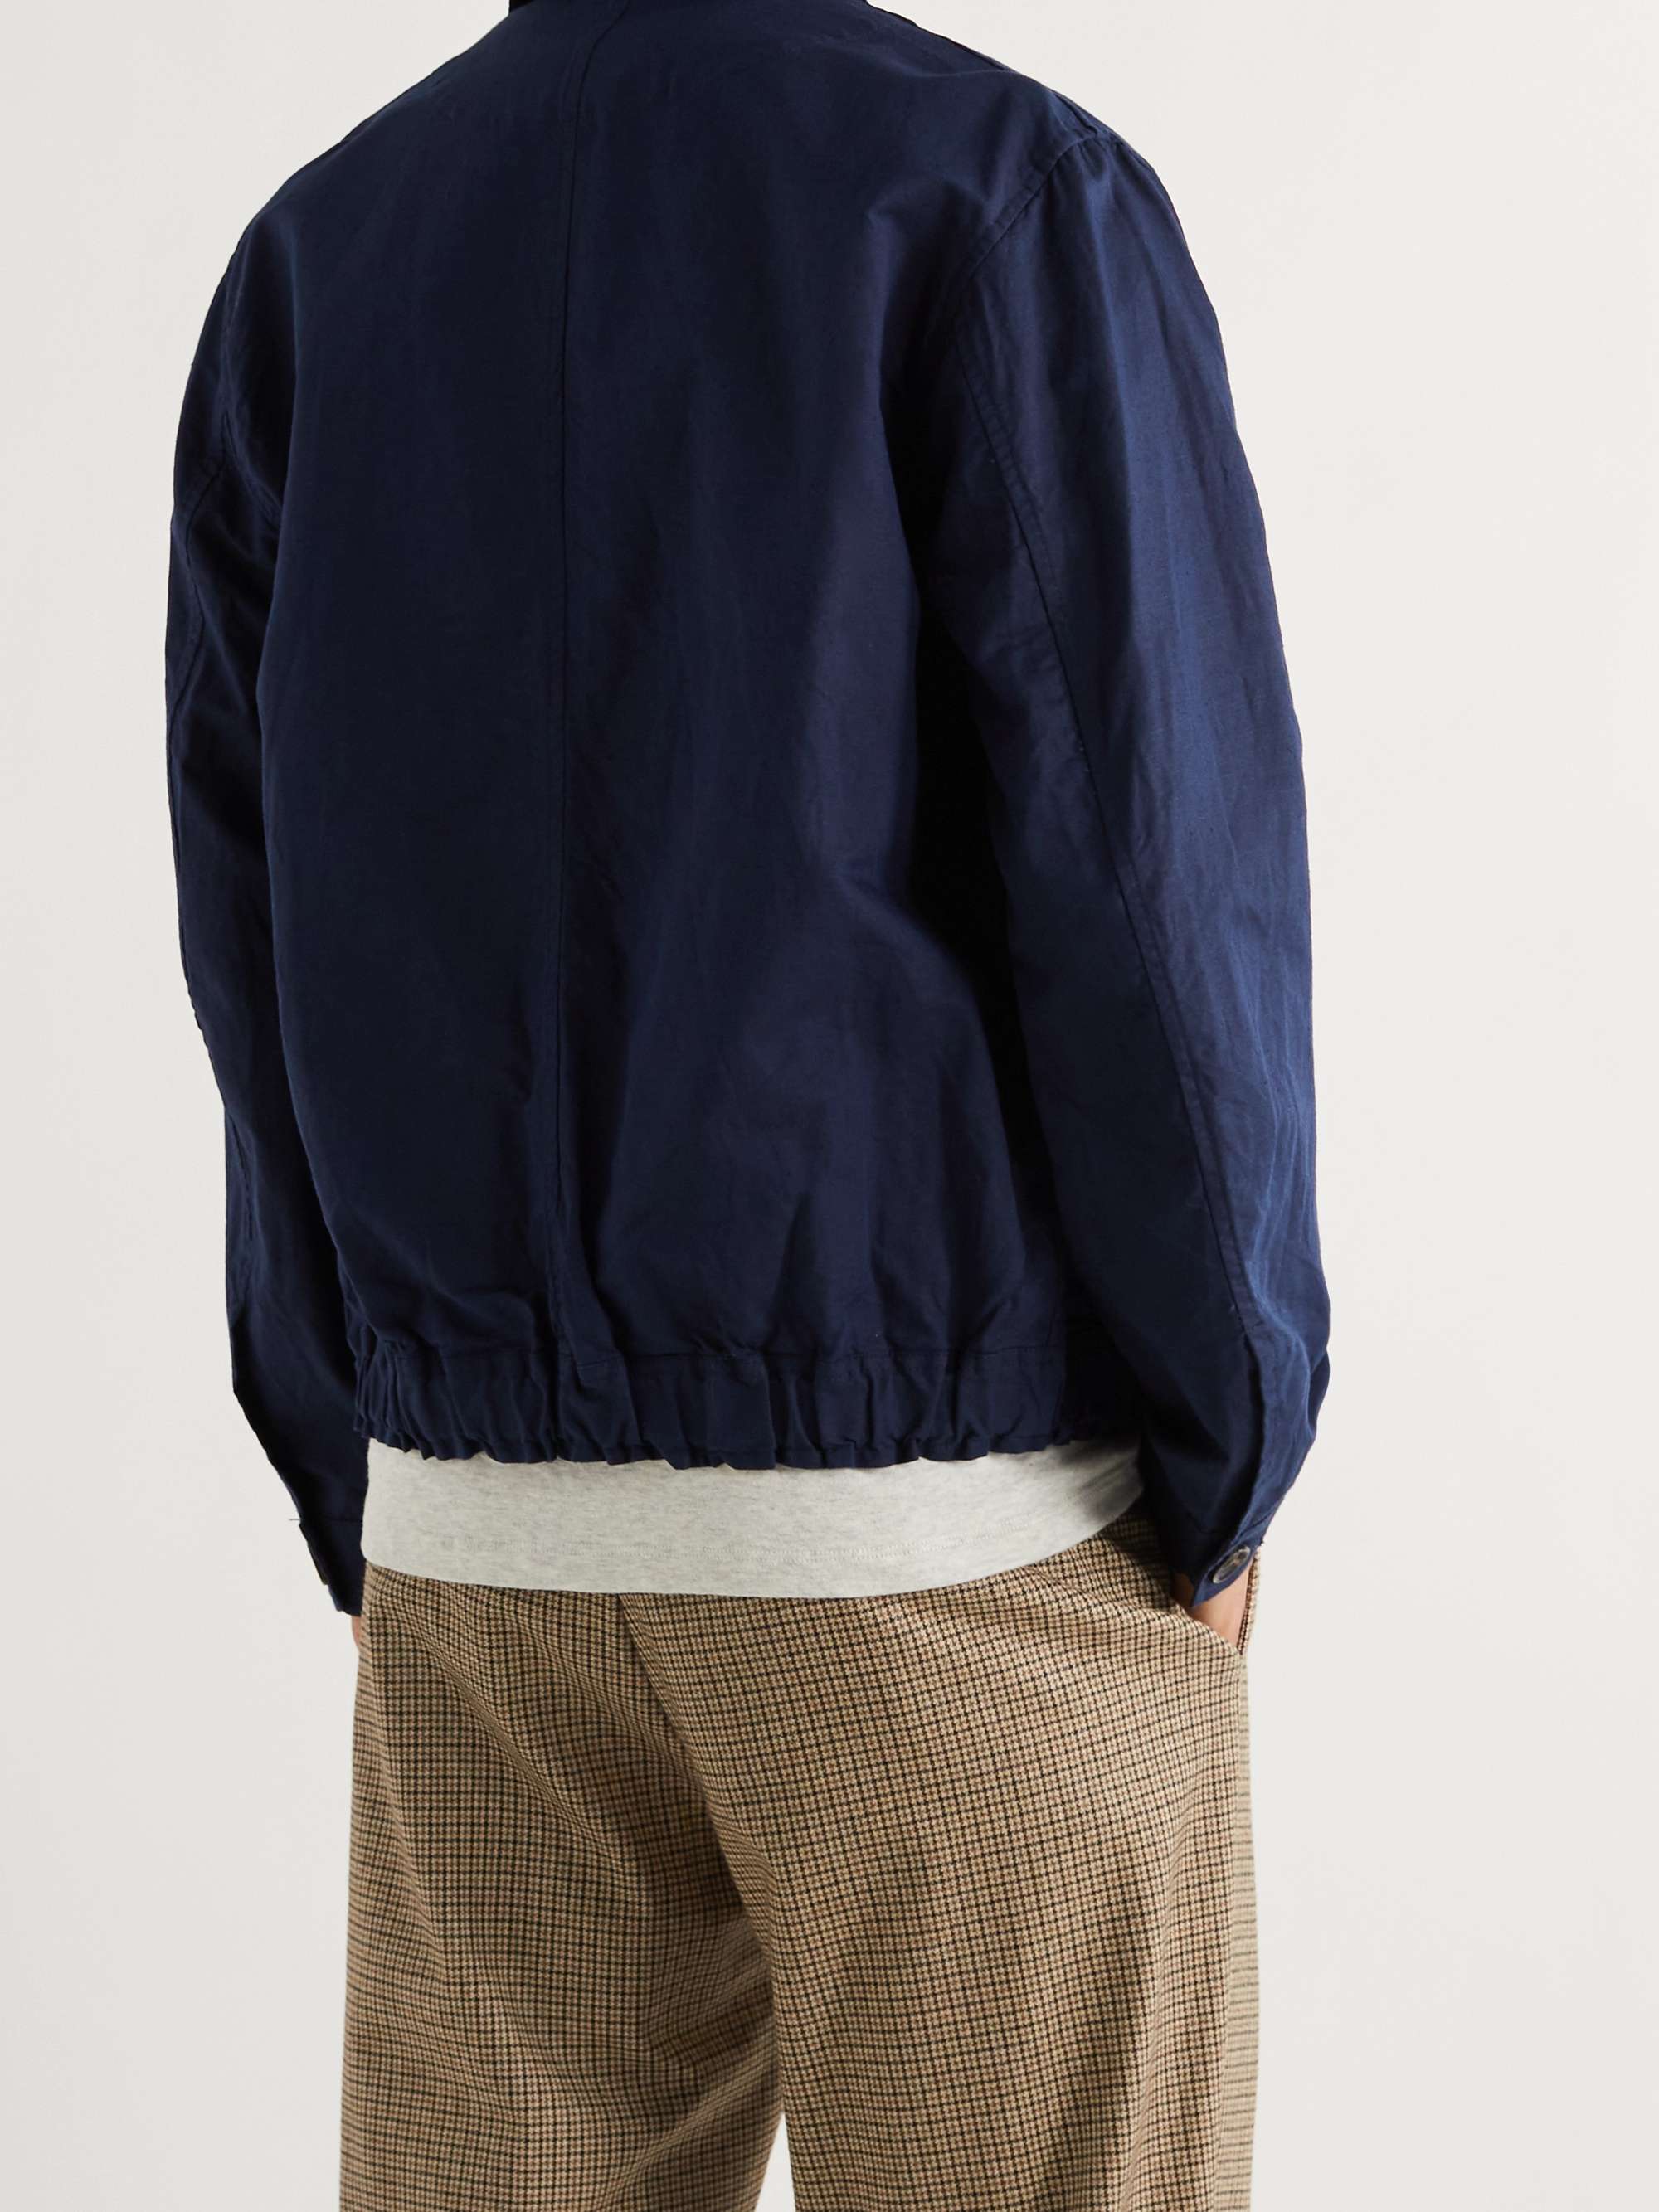 OLIVER SPENCER Stanford Linen and Cotton-Blend Blouson Jacket